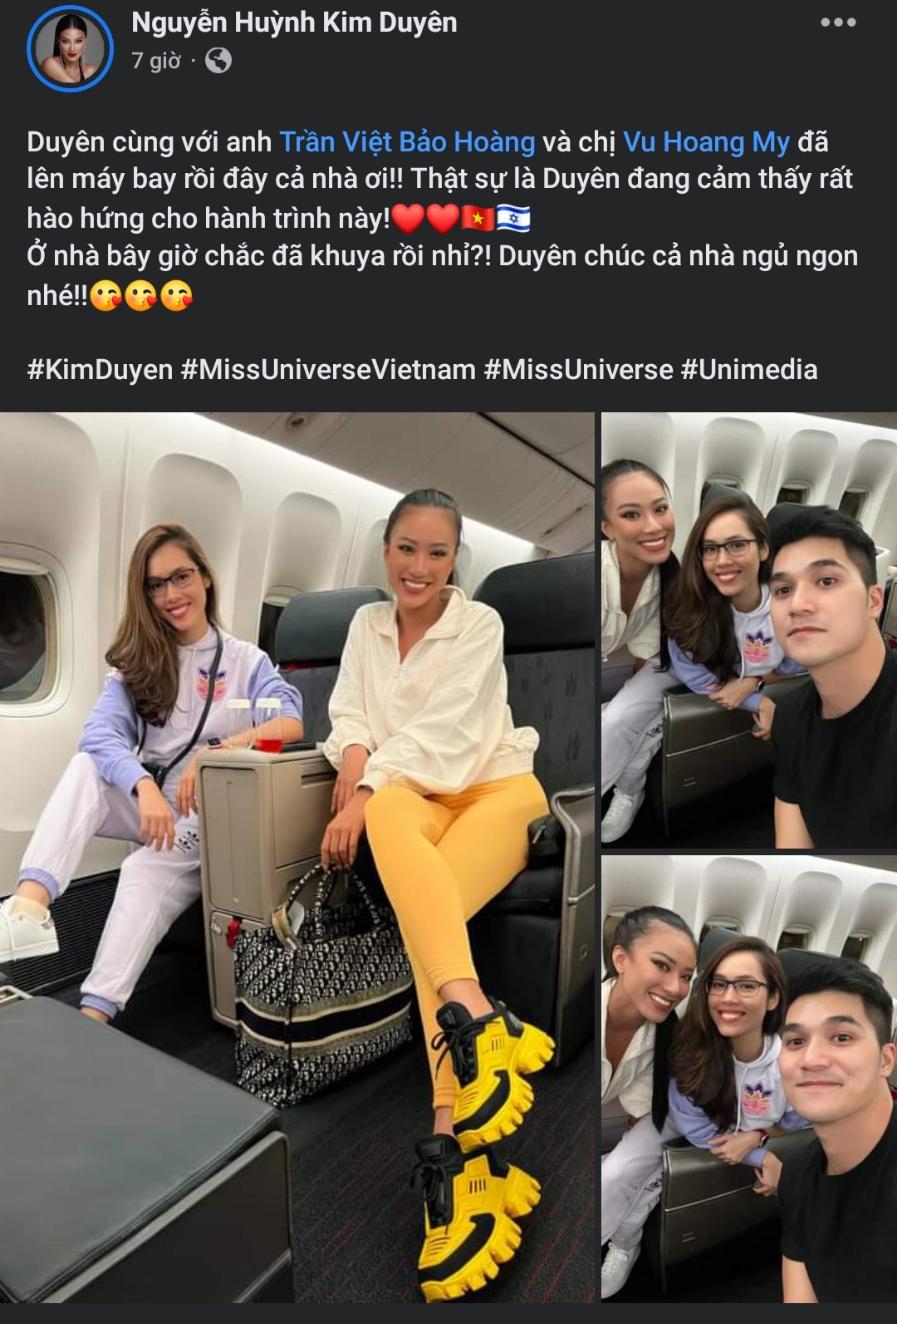 H’Hen Niê tặng Kim Duyên vòng và nhẫn đeo trong Miss Universe 2019 ngay tại sân bay - Ảnh 14